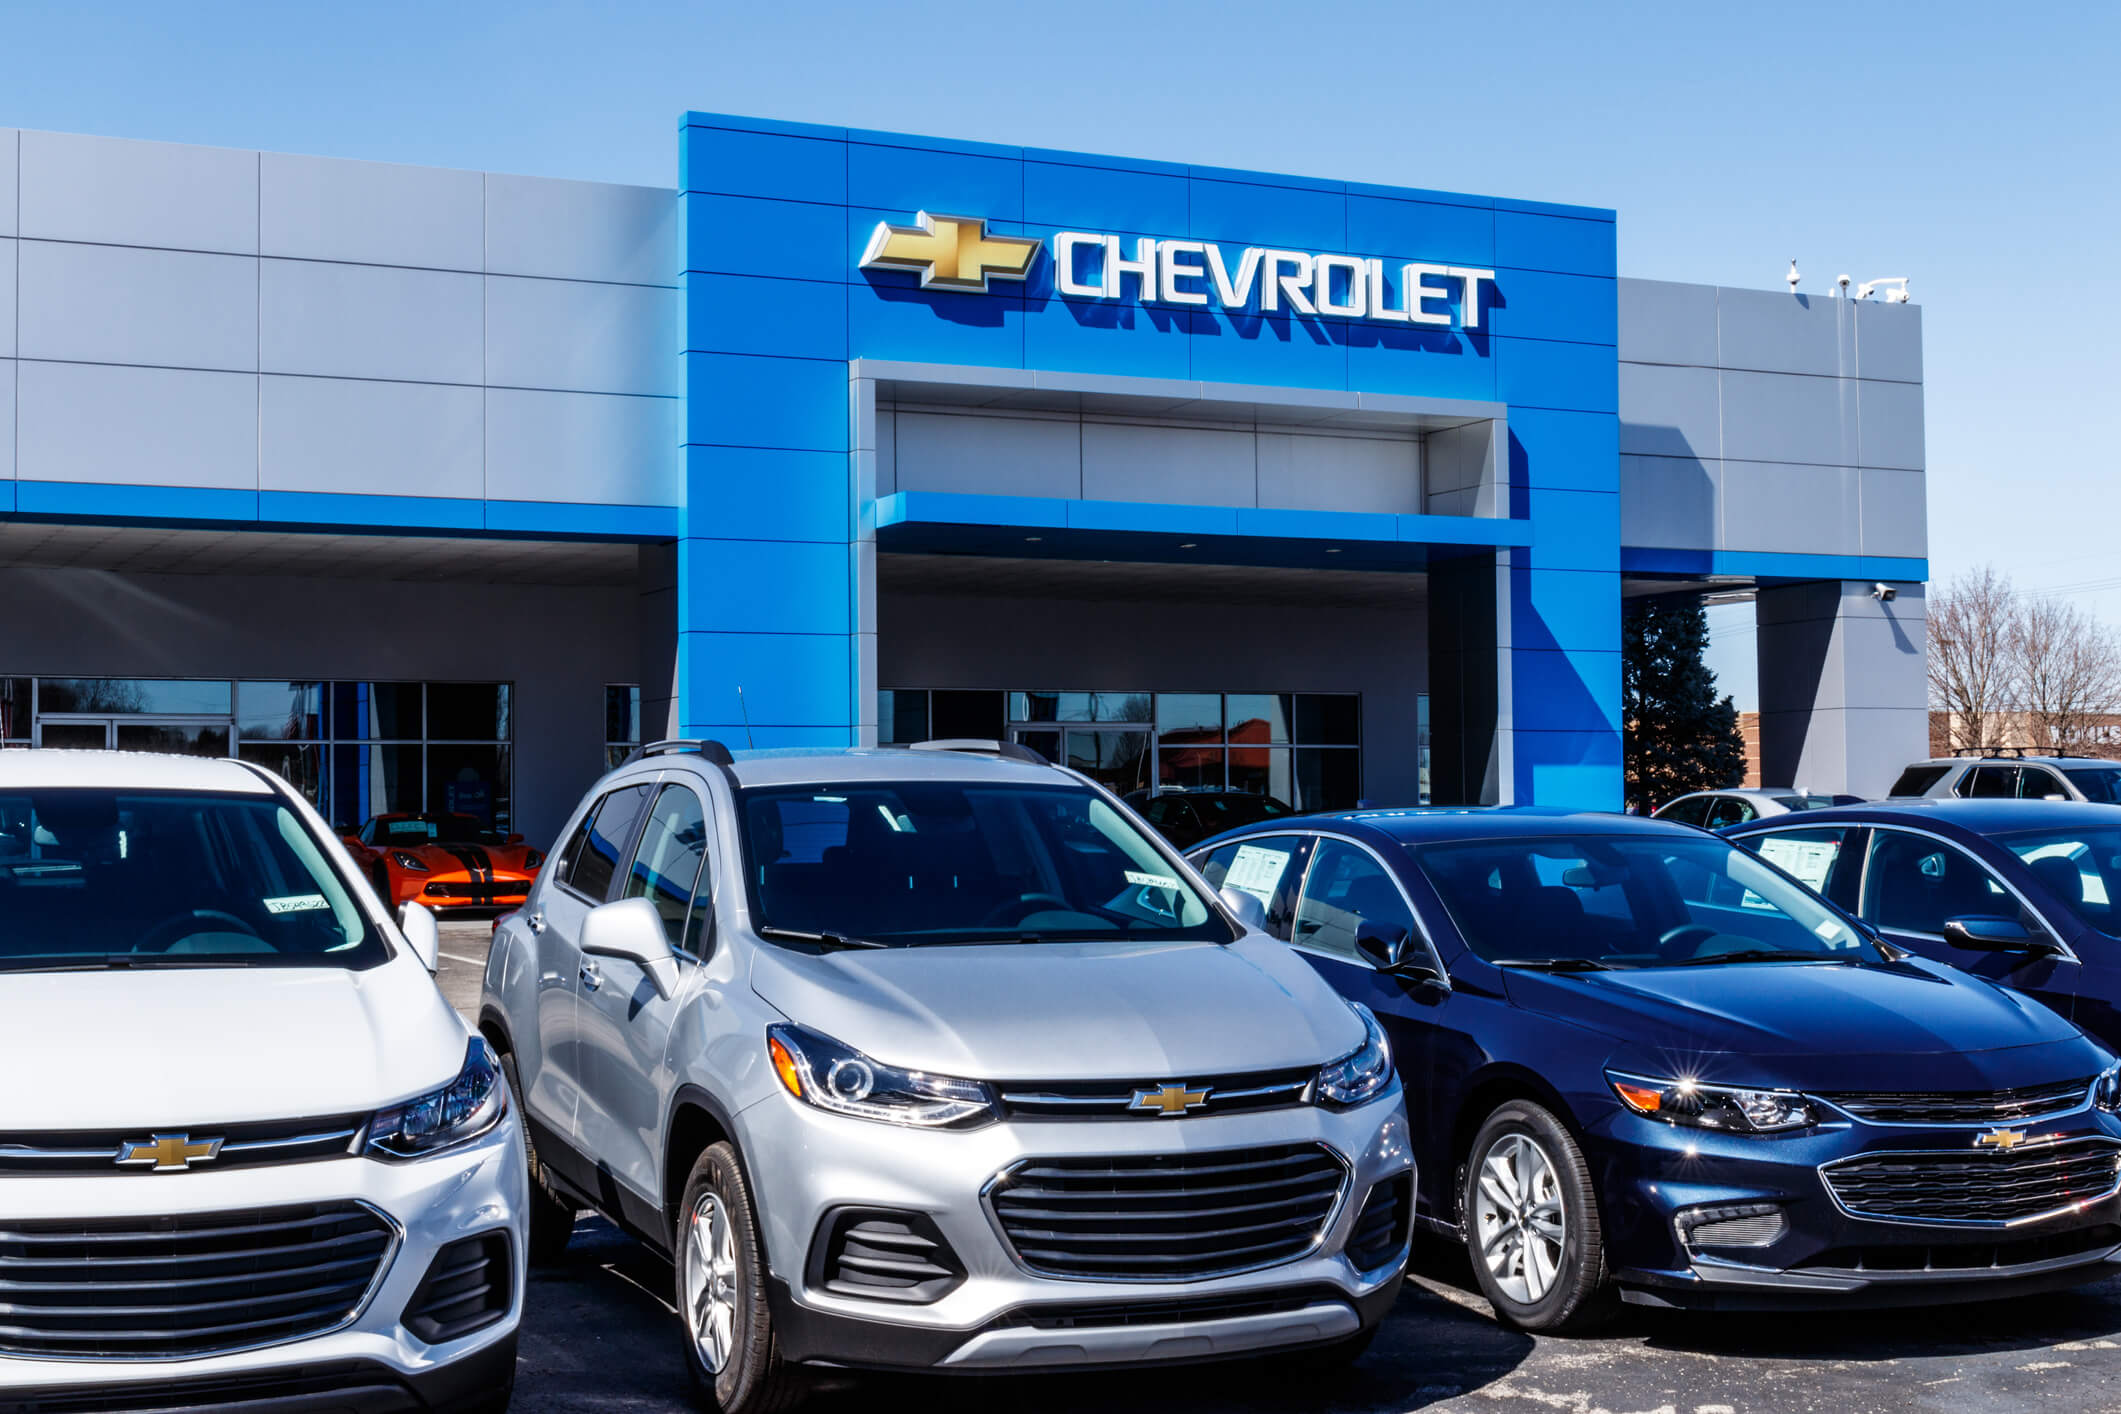 Chevrolet car dealership, a part of General Motors.